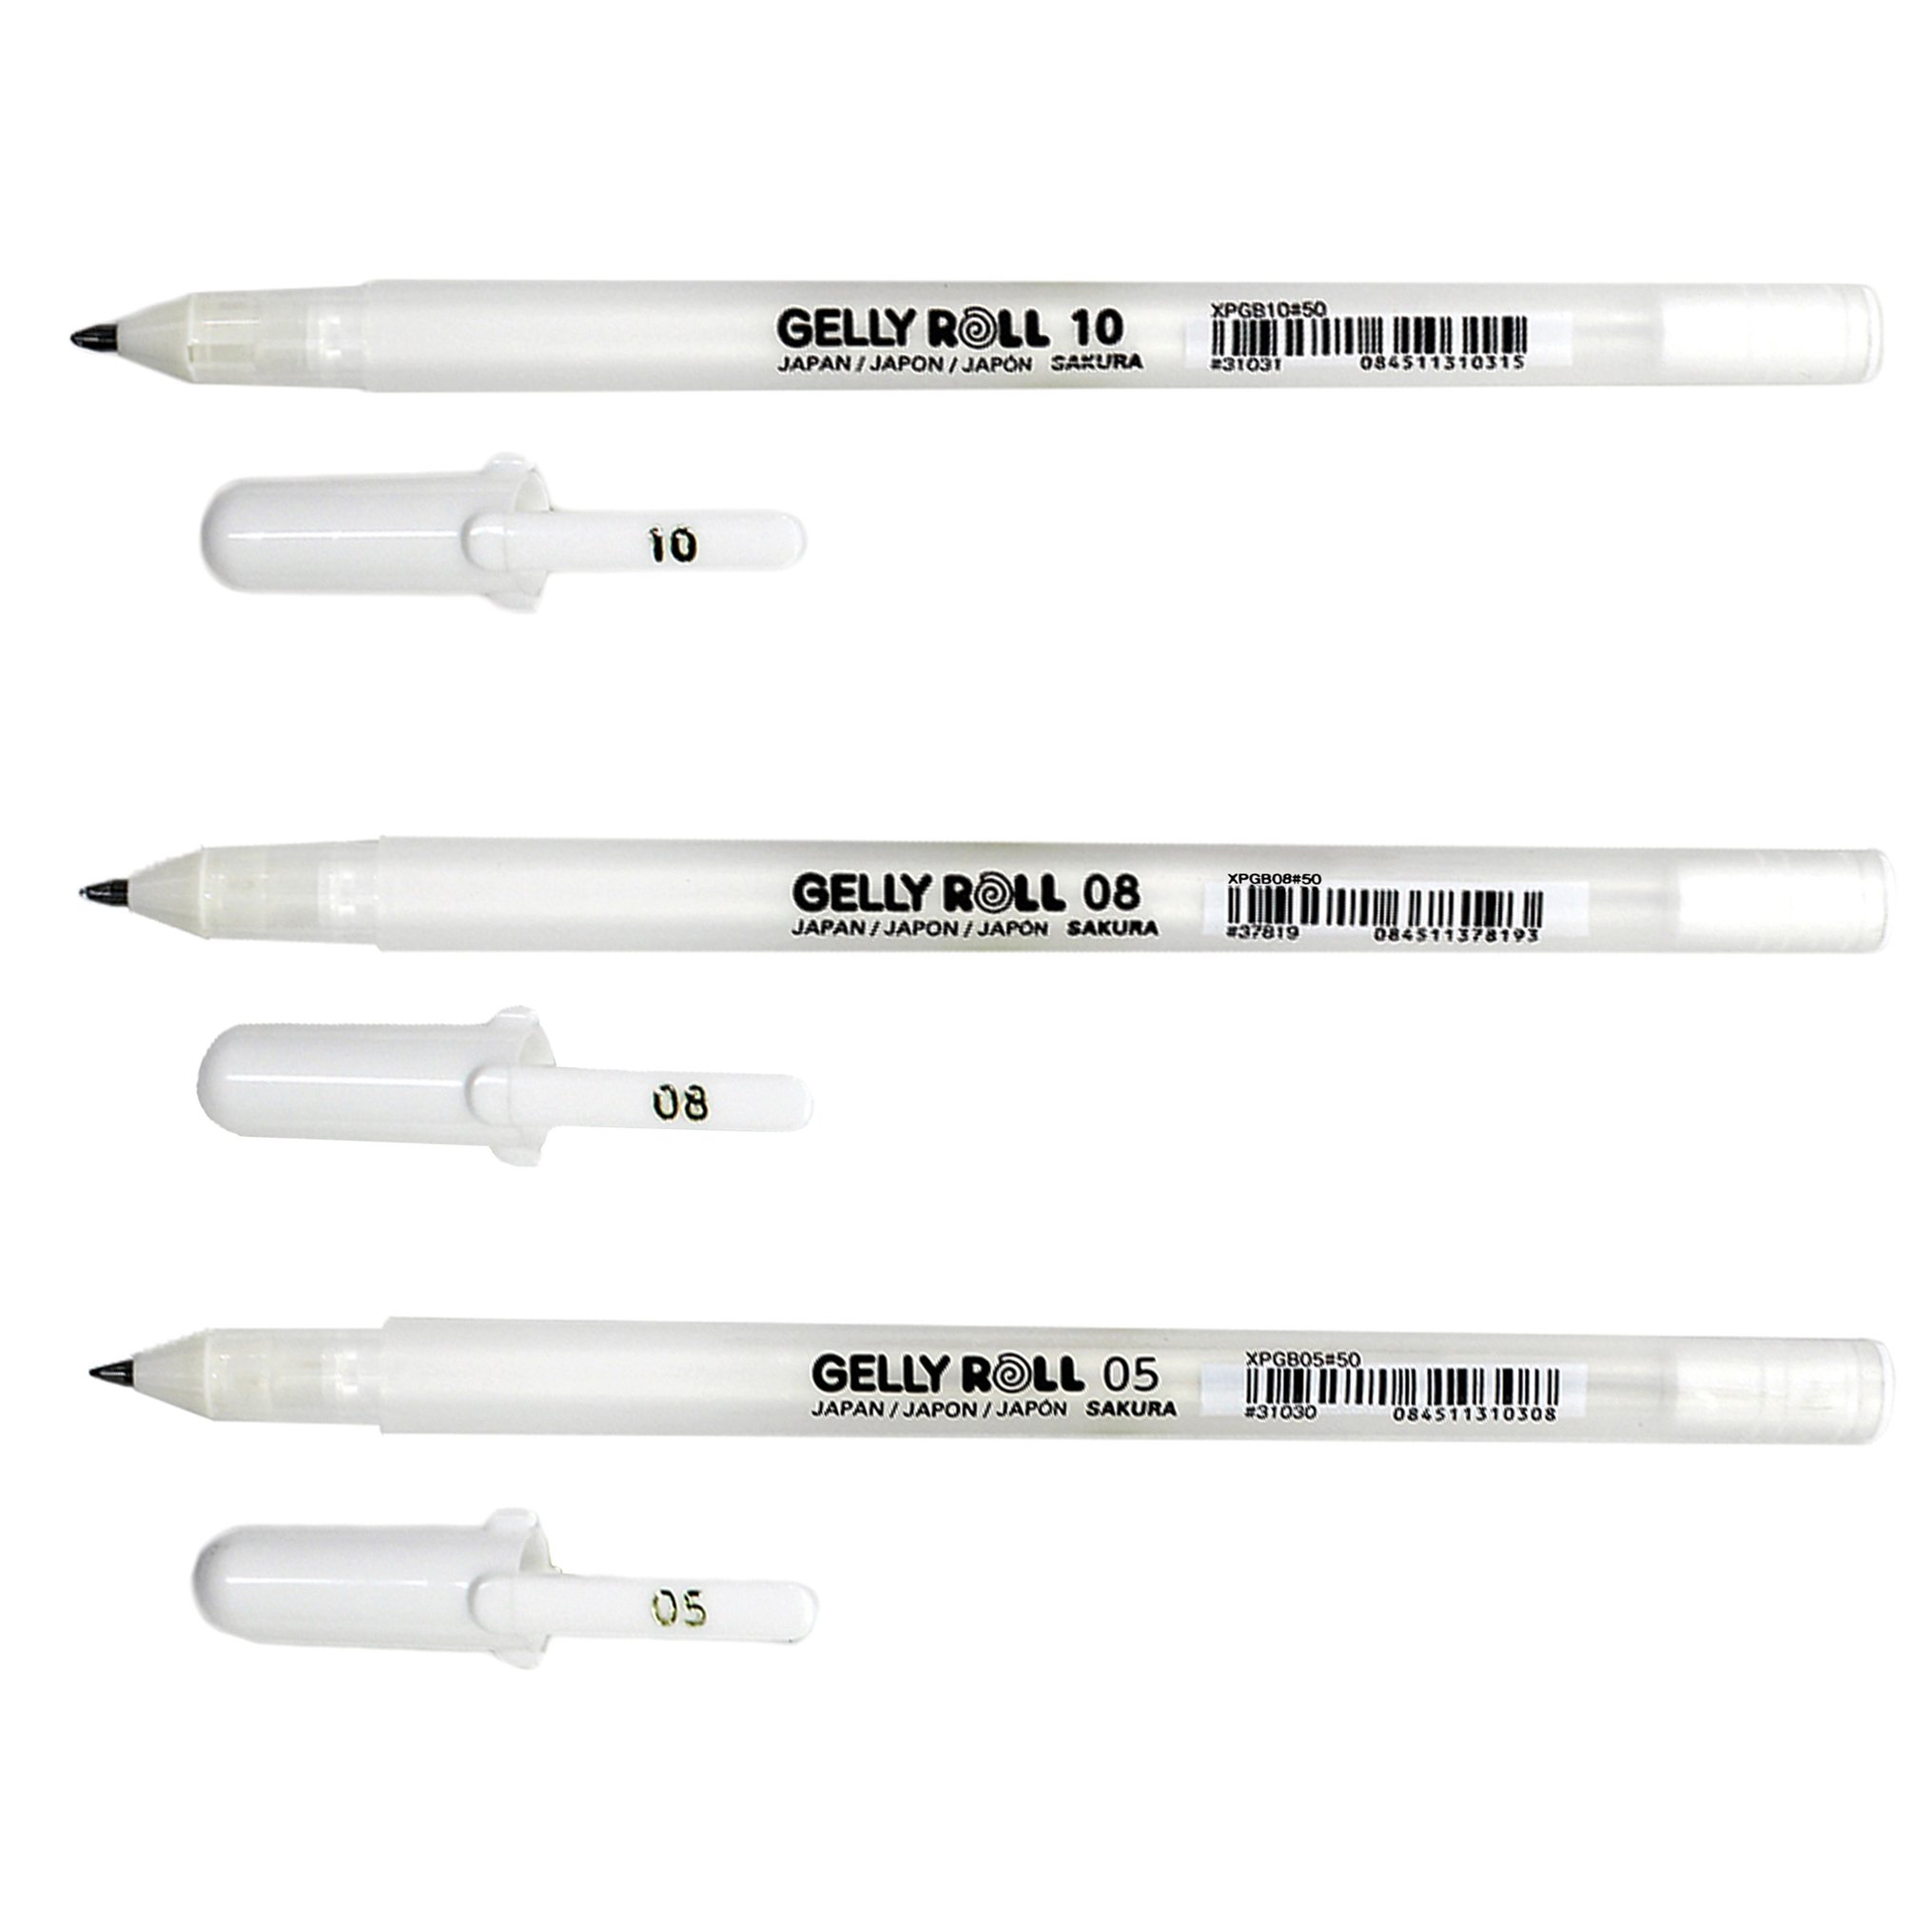 Sakura 57454 Gelly Roll Classic Ass't (05/08/10) 3pk Pen, White